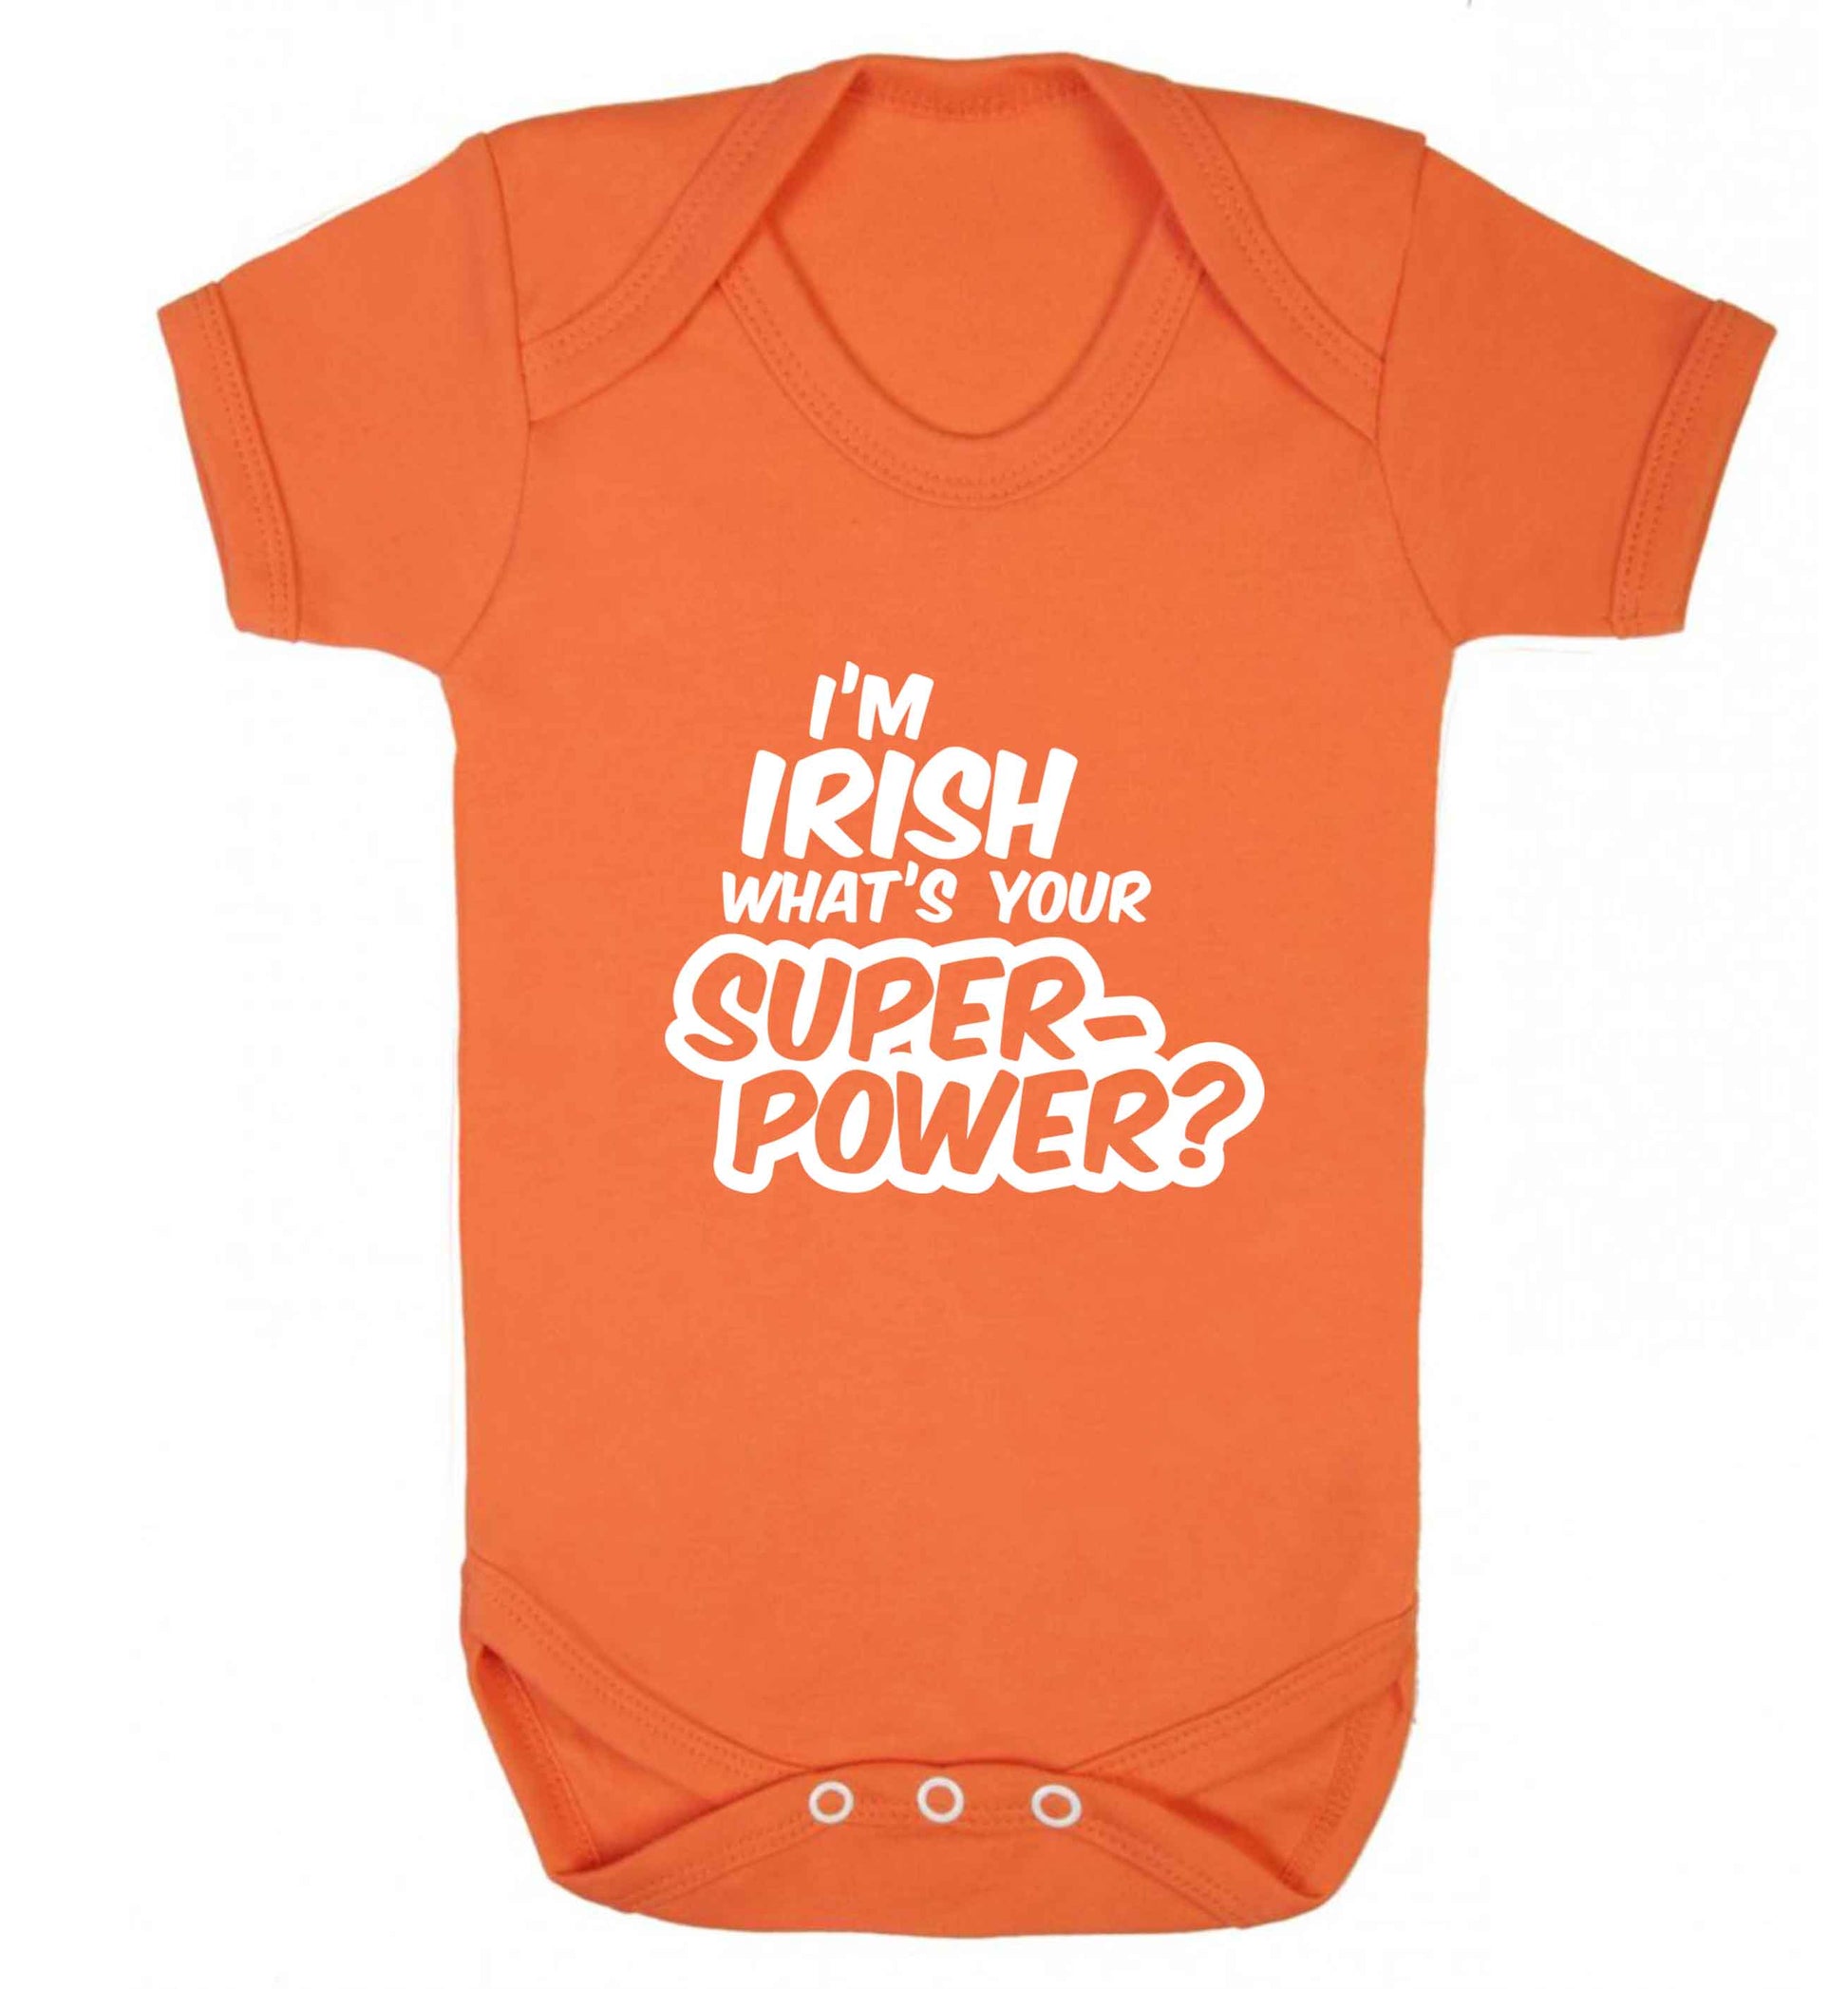 I'm Irish what's your superpower? baby vest orange 18-24 months